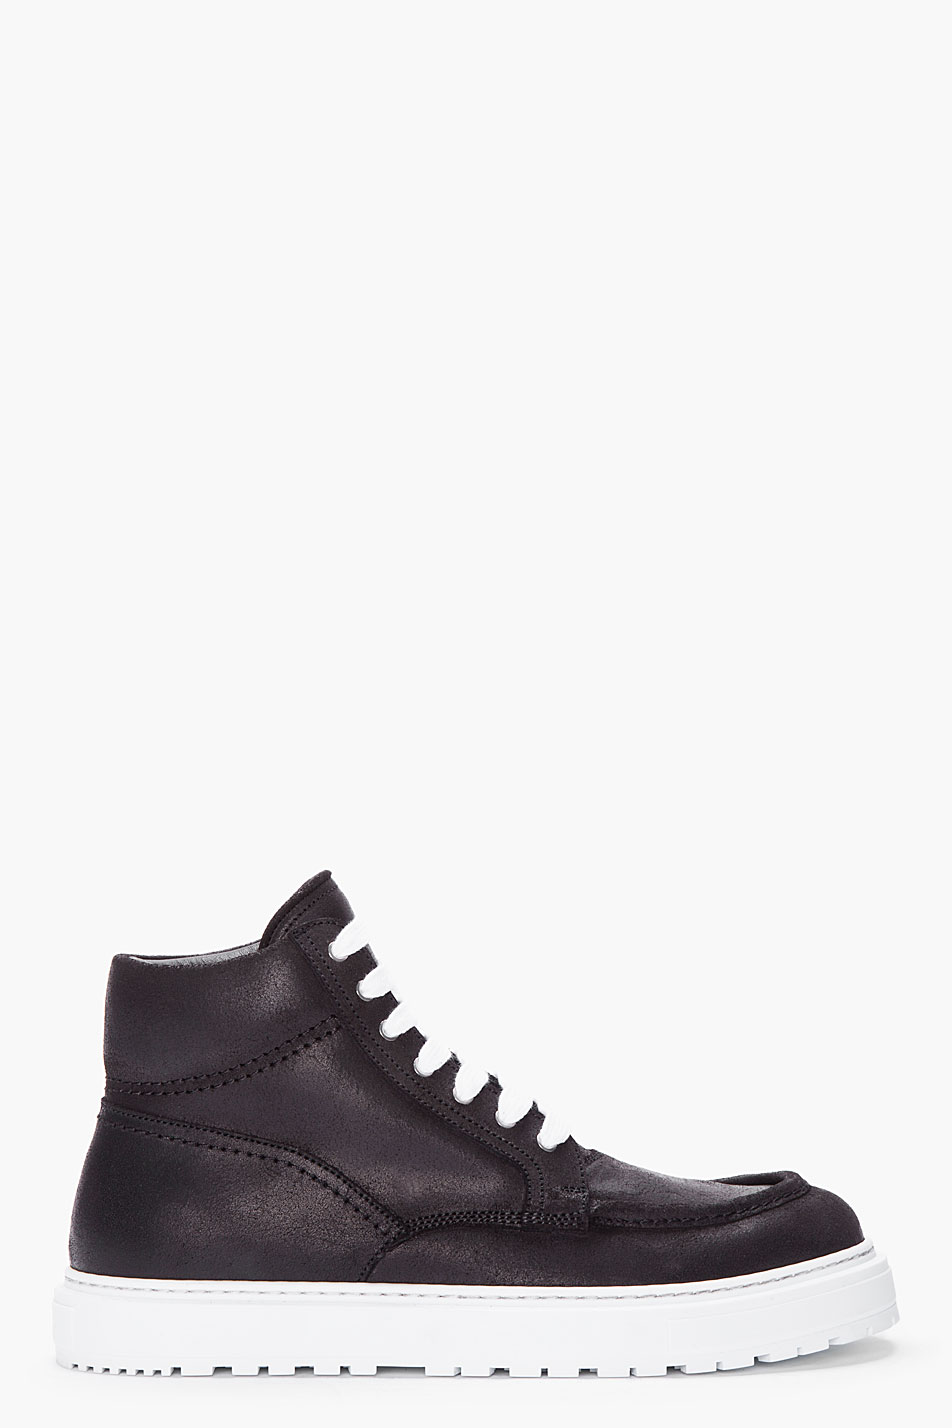 Kris van assche Black Leather Boat Sneakers in Black for Men | Lyst